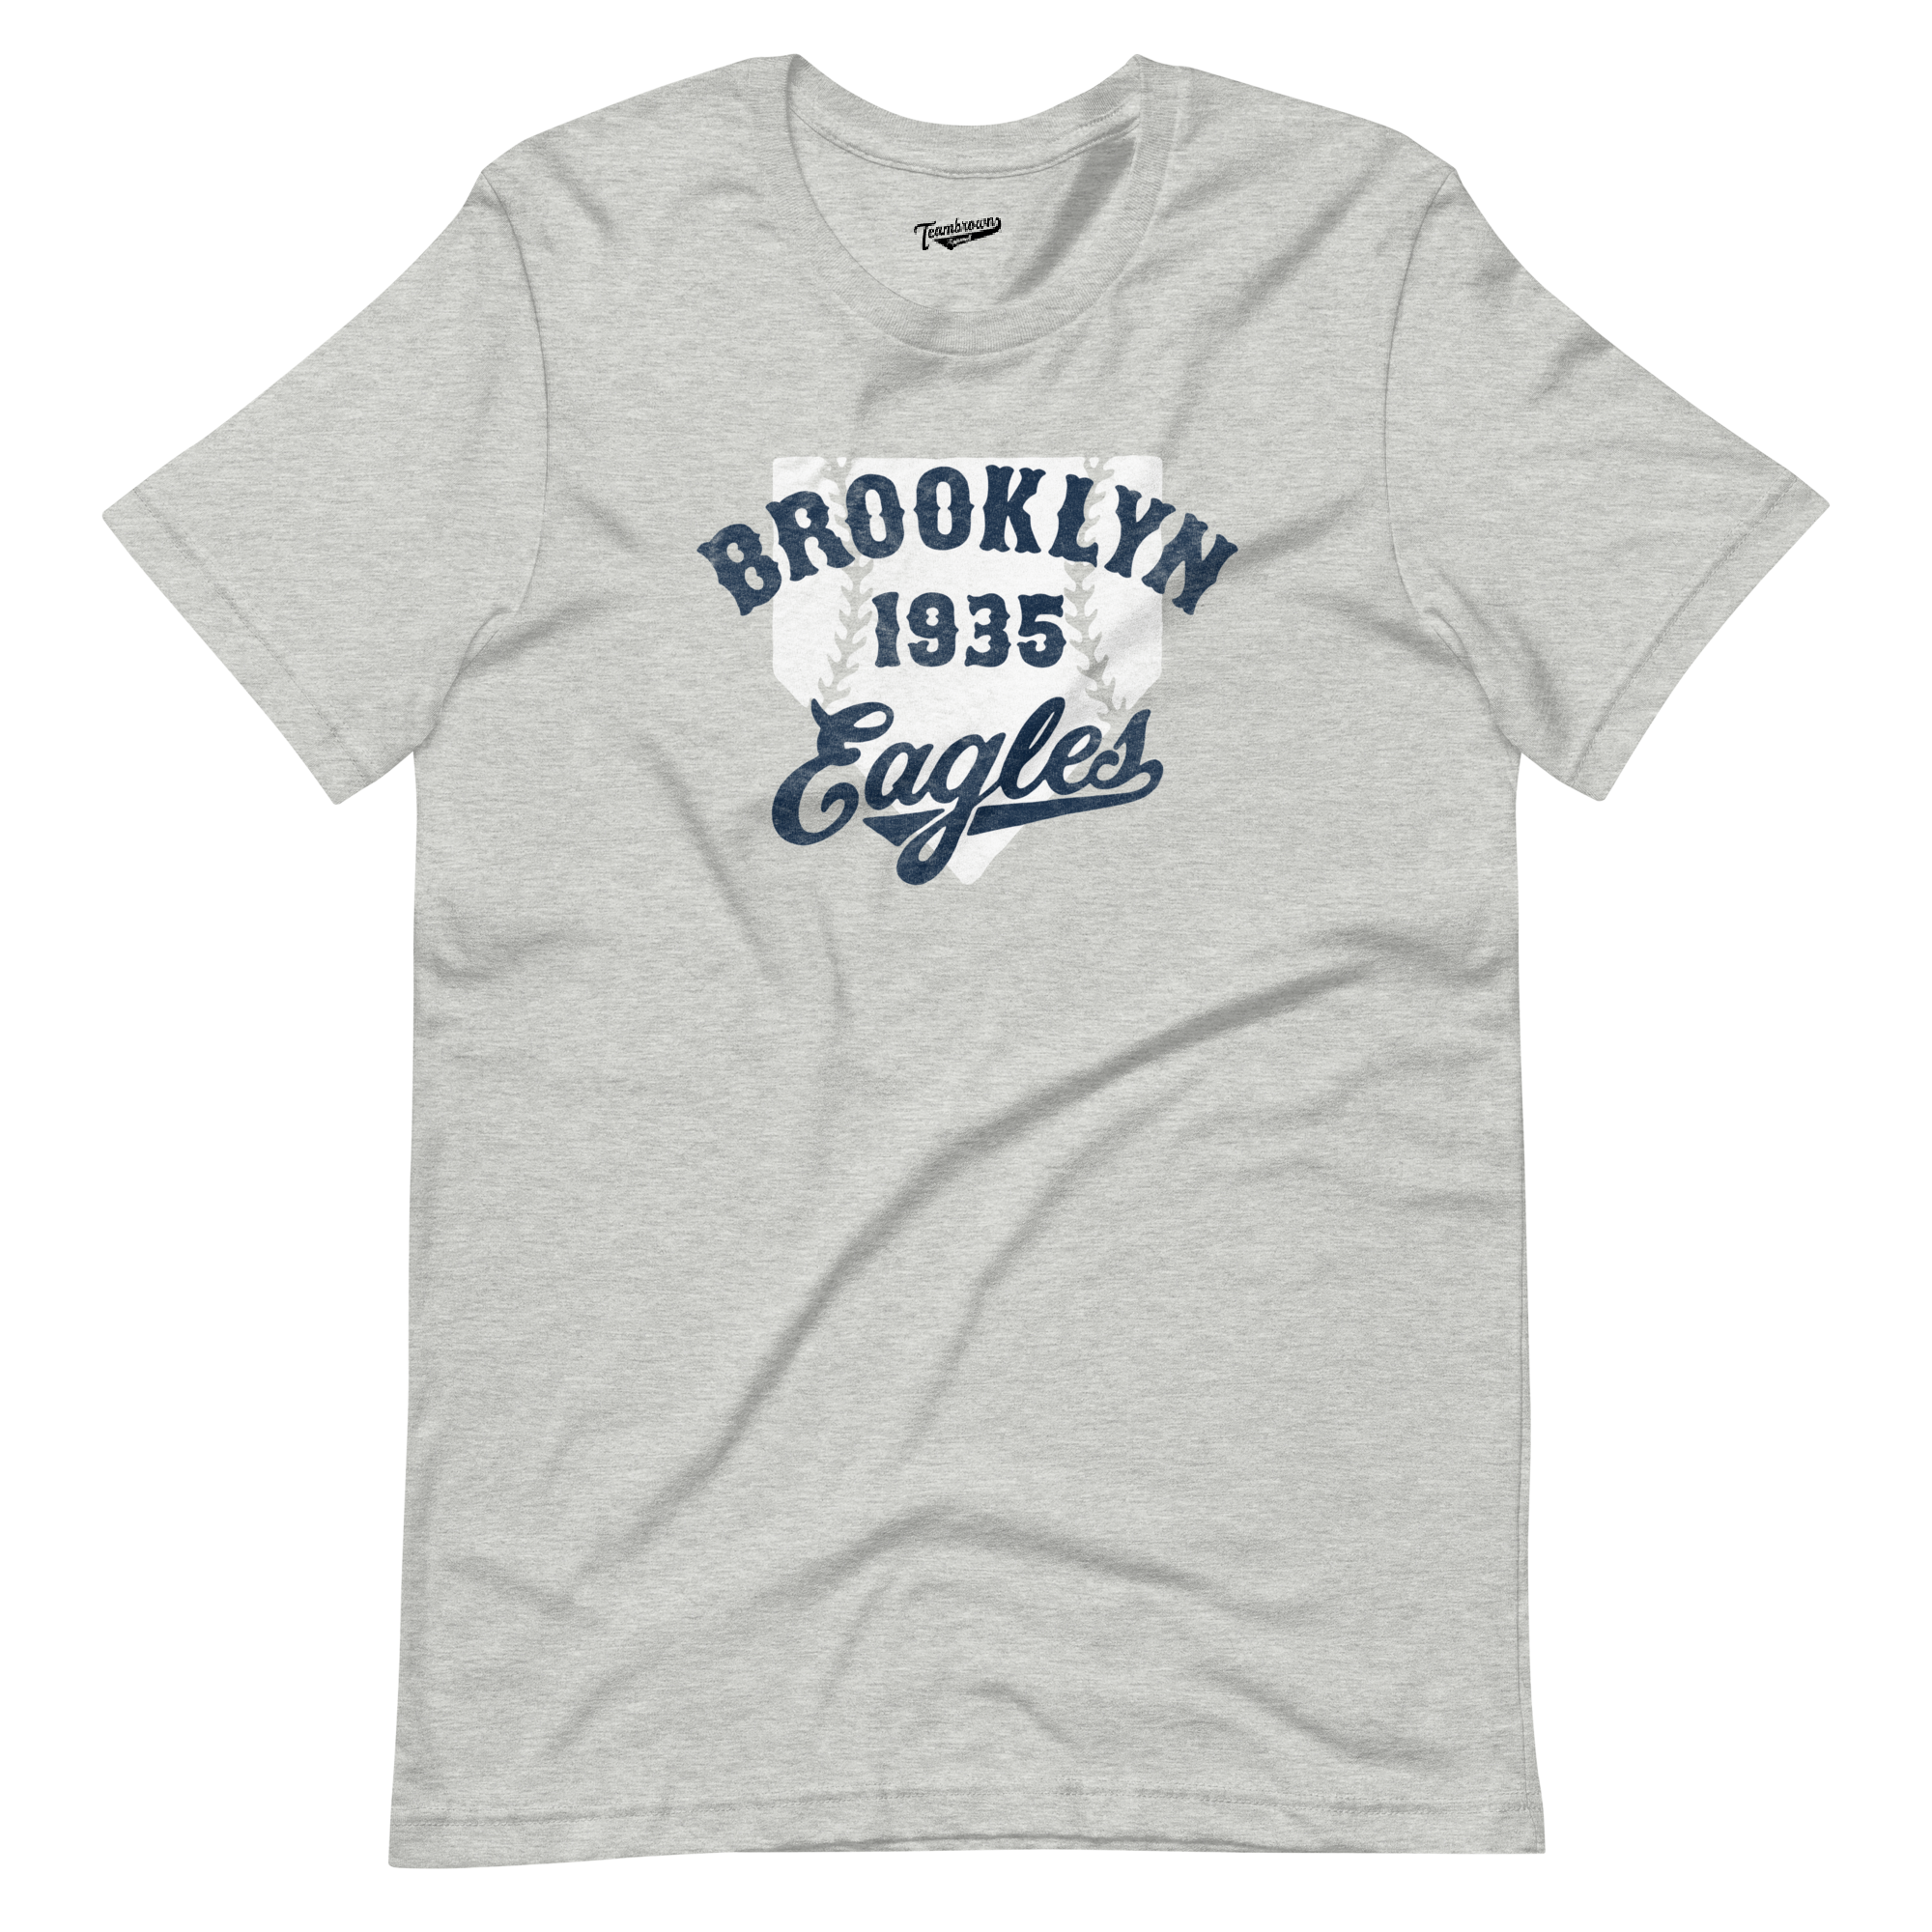 1935 - Brooklyn Eagles - Unisex T-Shirt